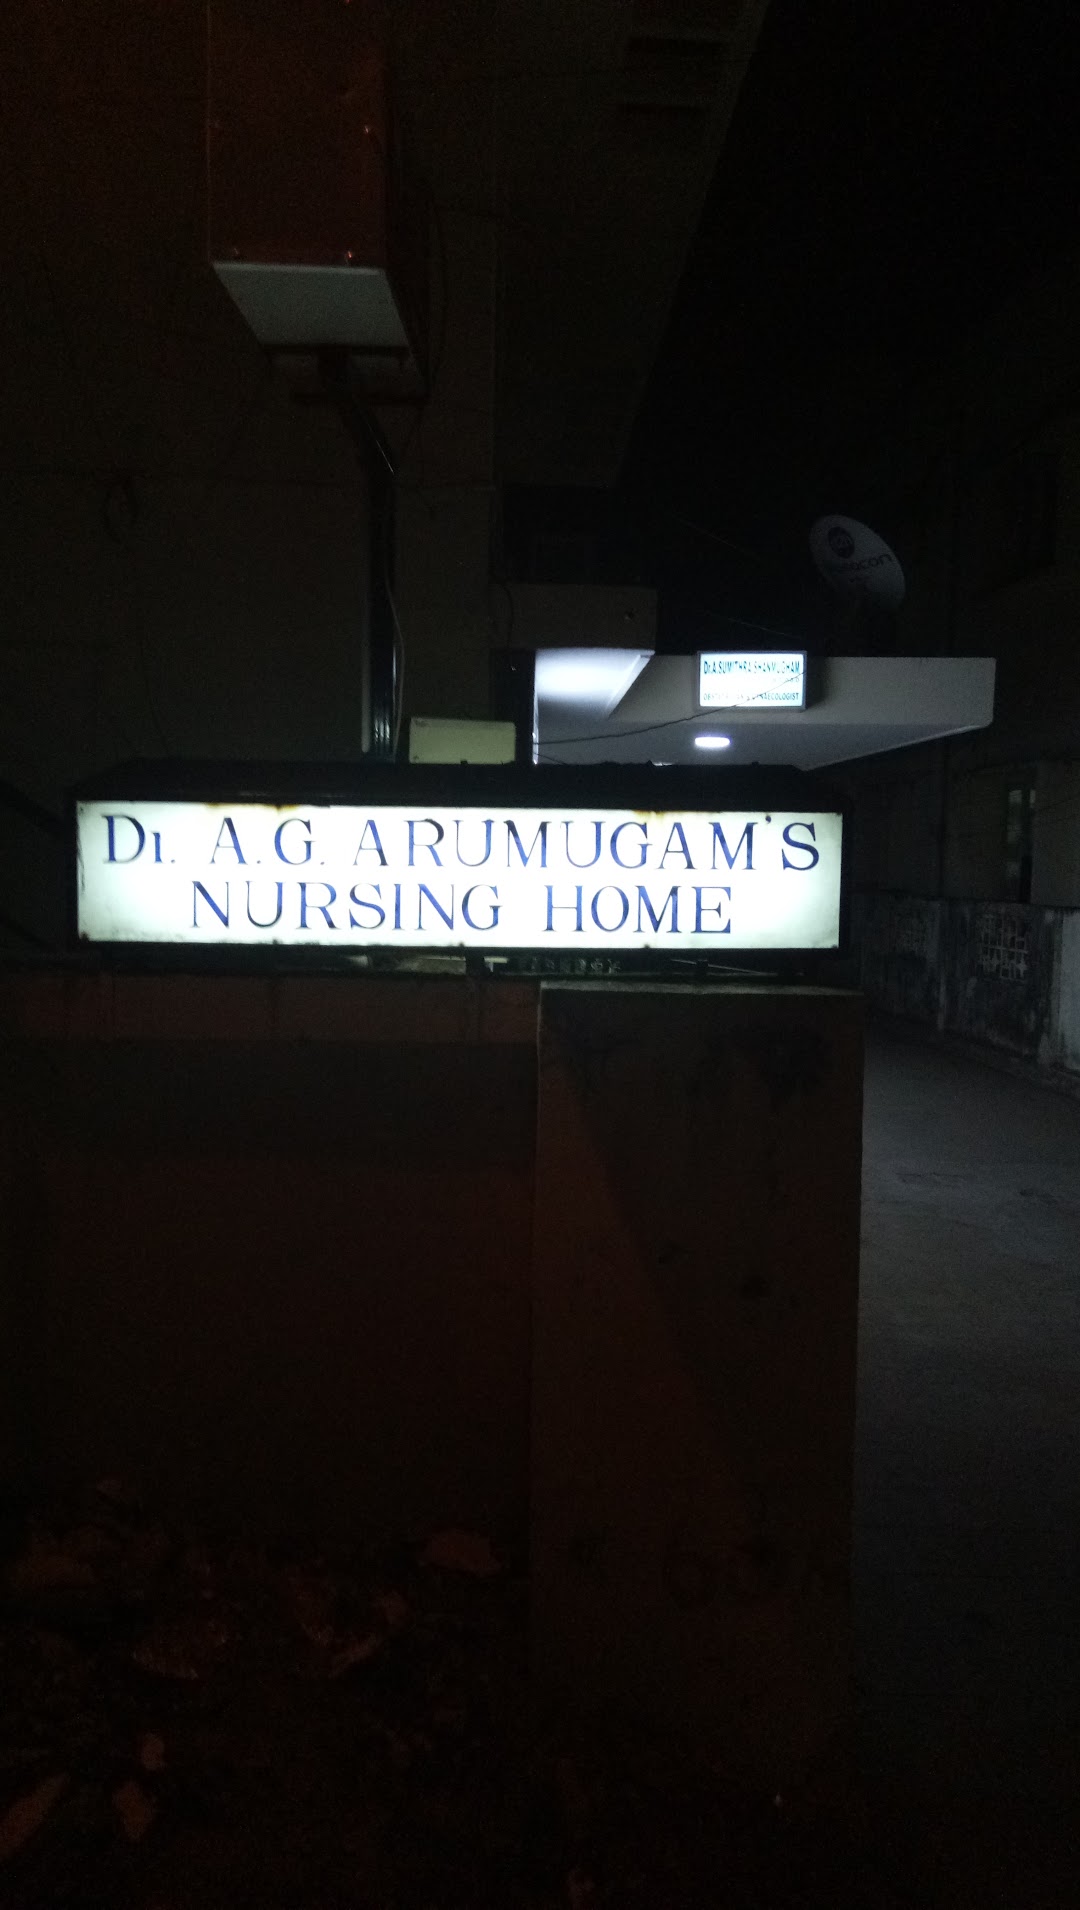 Dr. A. G. Arumugam Nursing Home